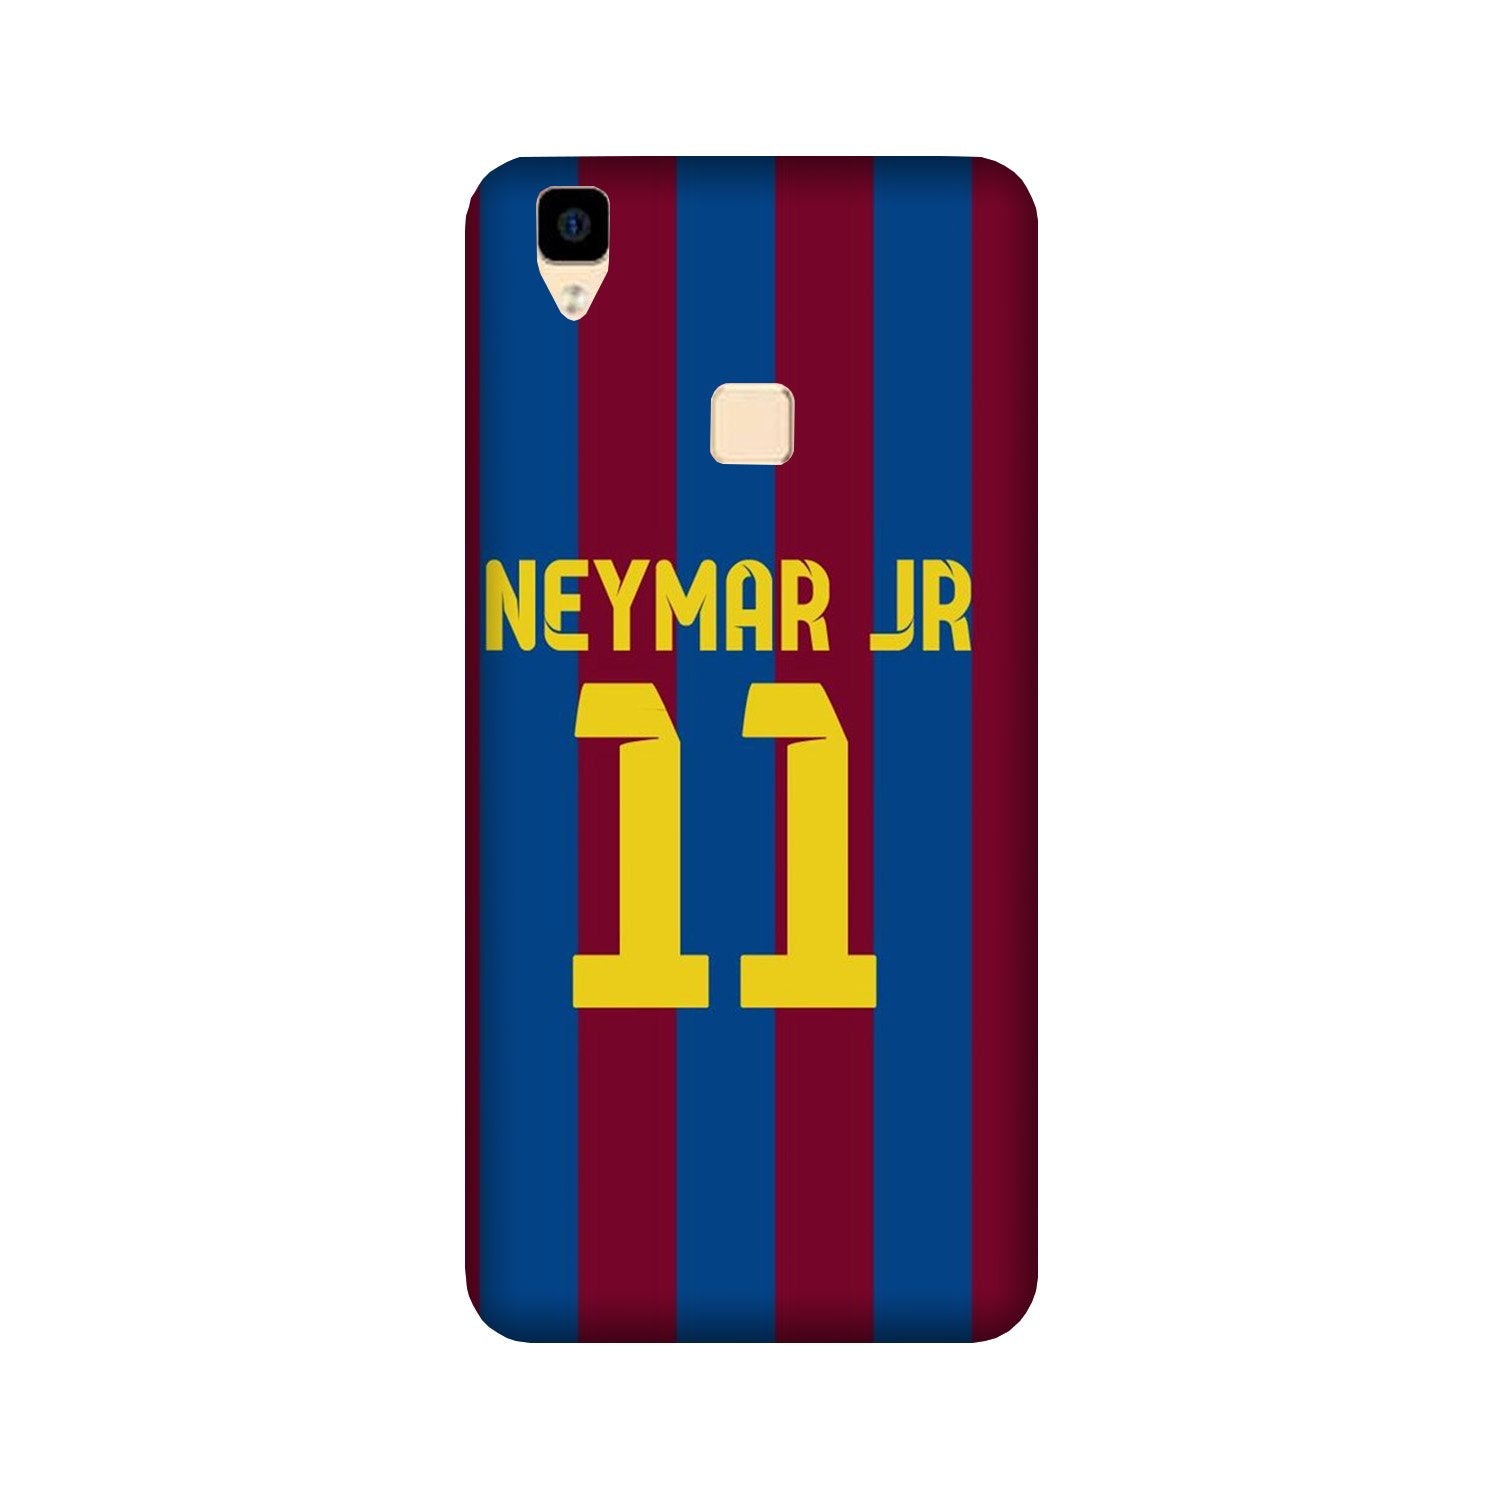 Neymar Jr Case for Vivo V3 Max(Design - 162)